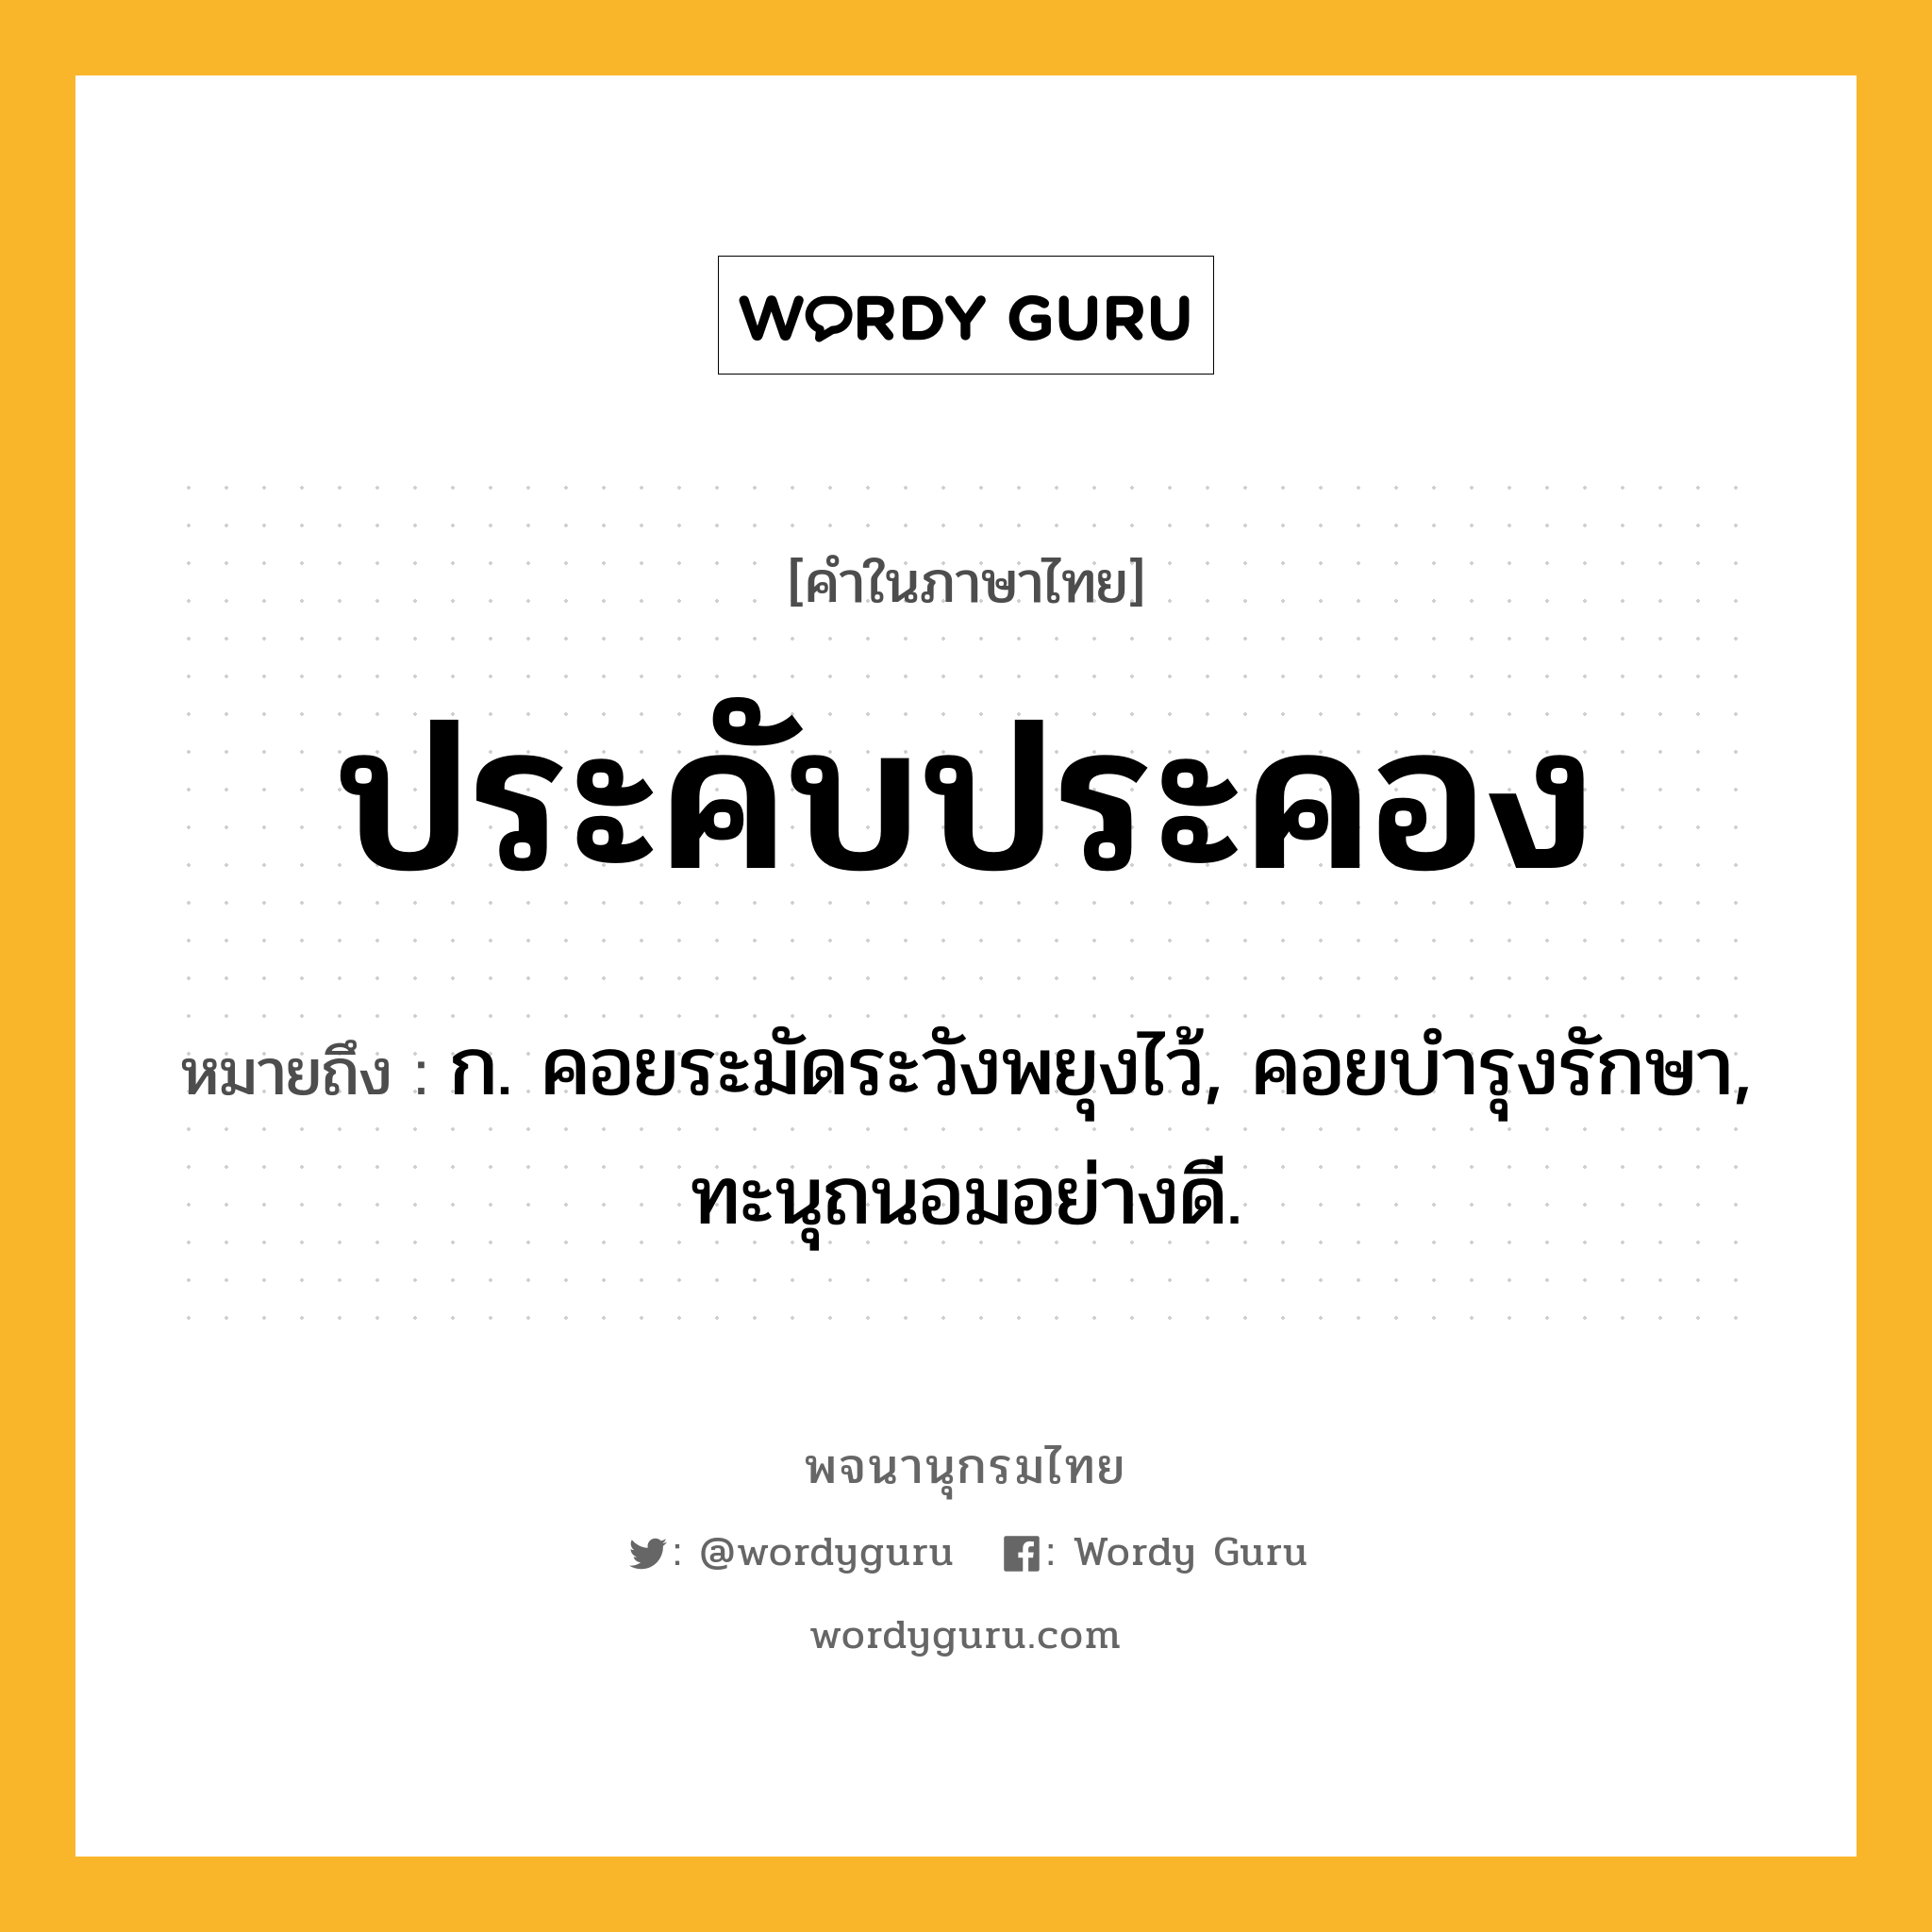 ประคับประคอง หมายถึงอะไร?, คำในภาษาไทย ประคับประคอง หมายถึง ก. คอยระมัดระวังพยุงไว้, คอยบํารุงรักษา, ทะนุถนอมอย่างดี.